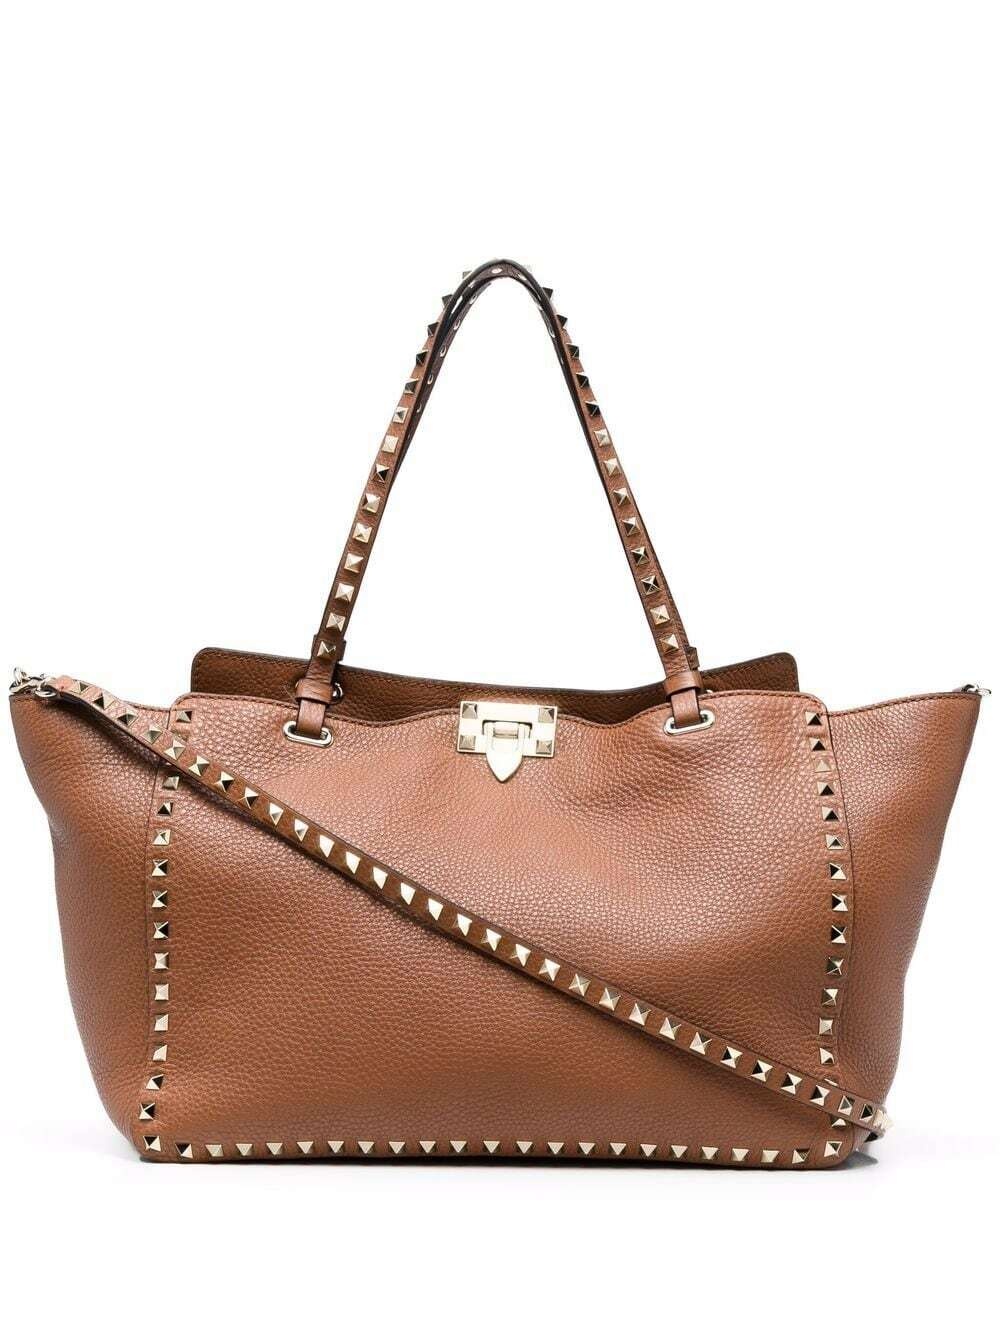 Valentino Rockstud Medium Bag